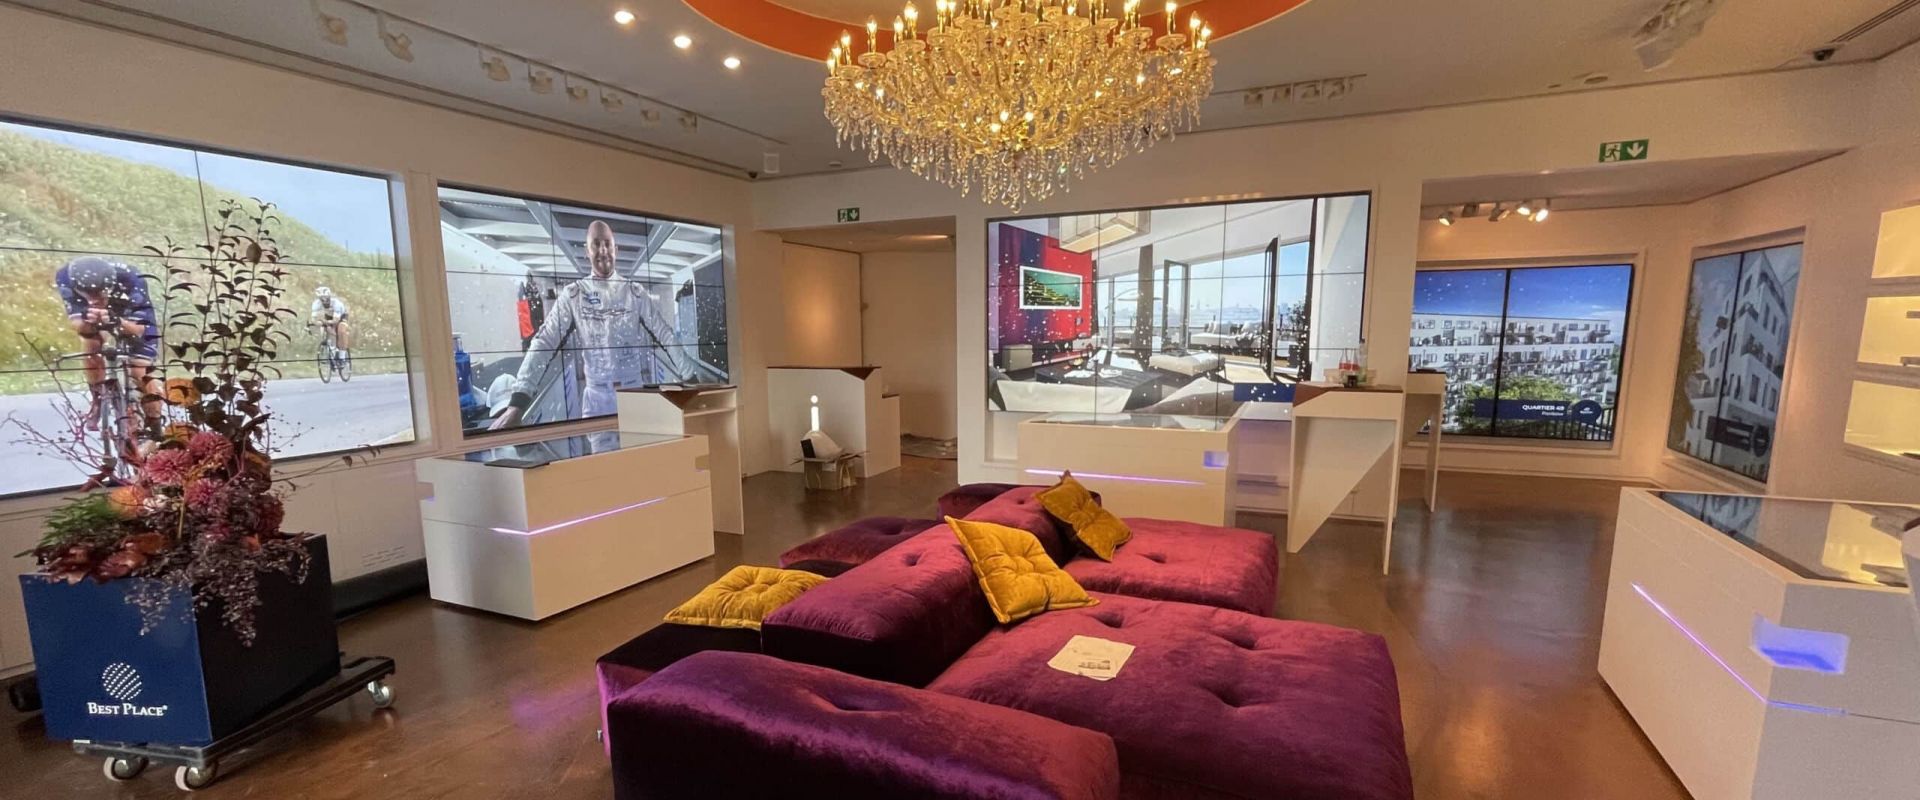 Immobilien Showroom mit interaktiven Multitouch-Tischen